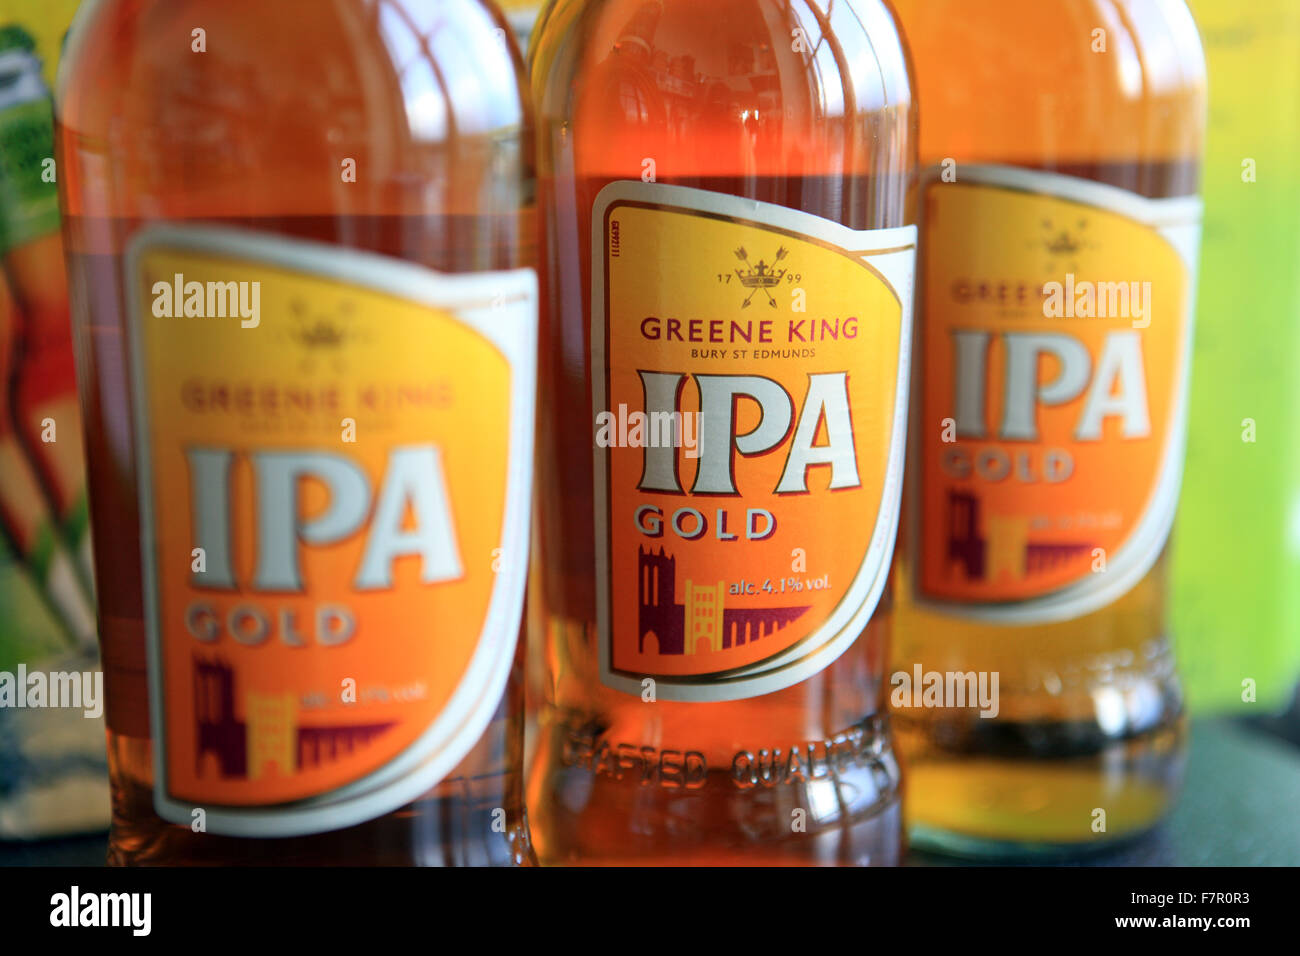 Bouteilles d'IPA (India Pale Ale) Or par Greene King Brewery au Royaume-Uni Banque D'Images